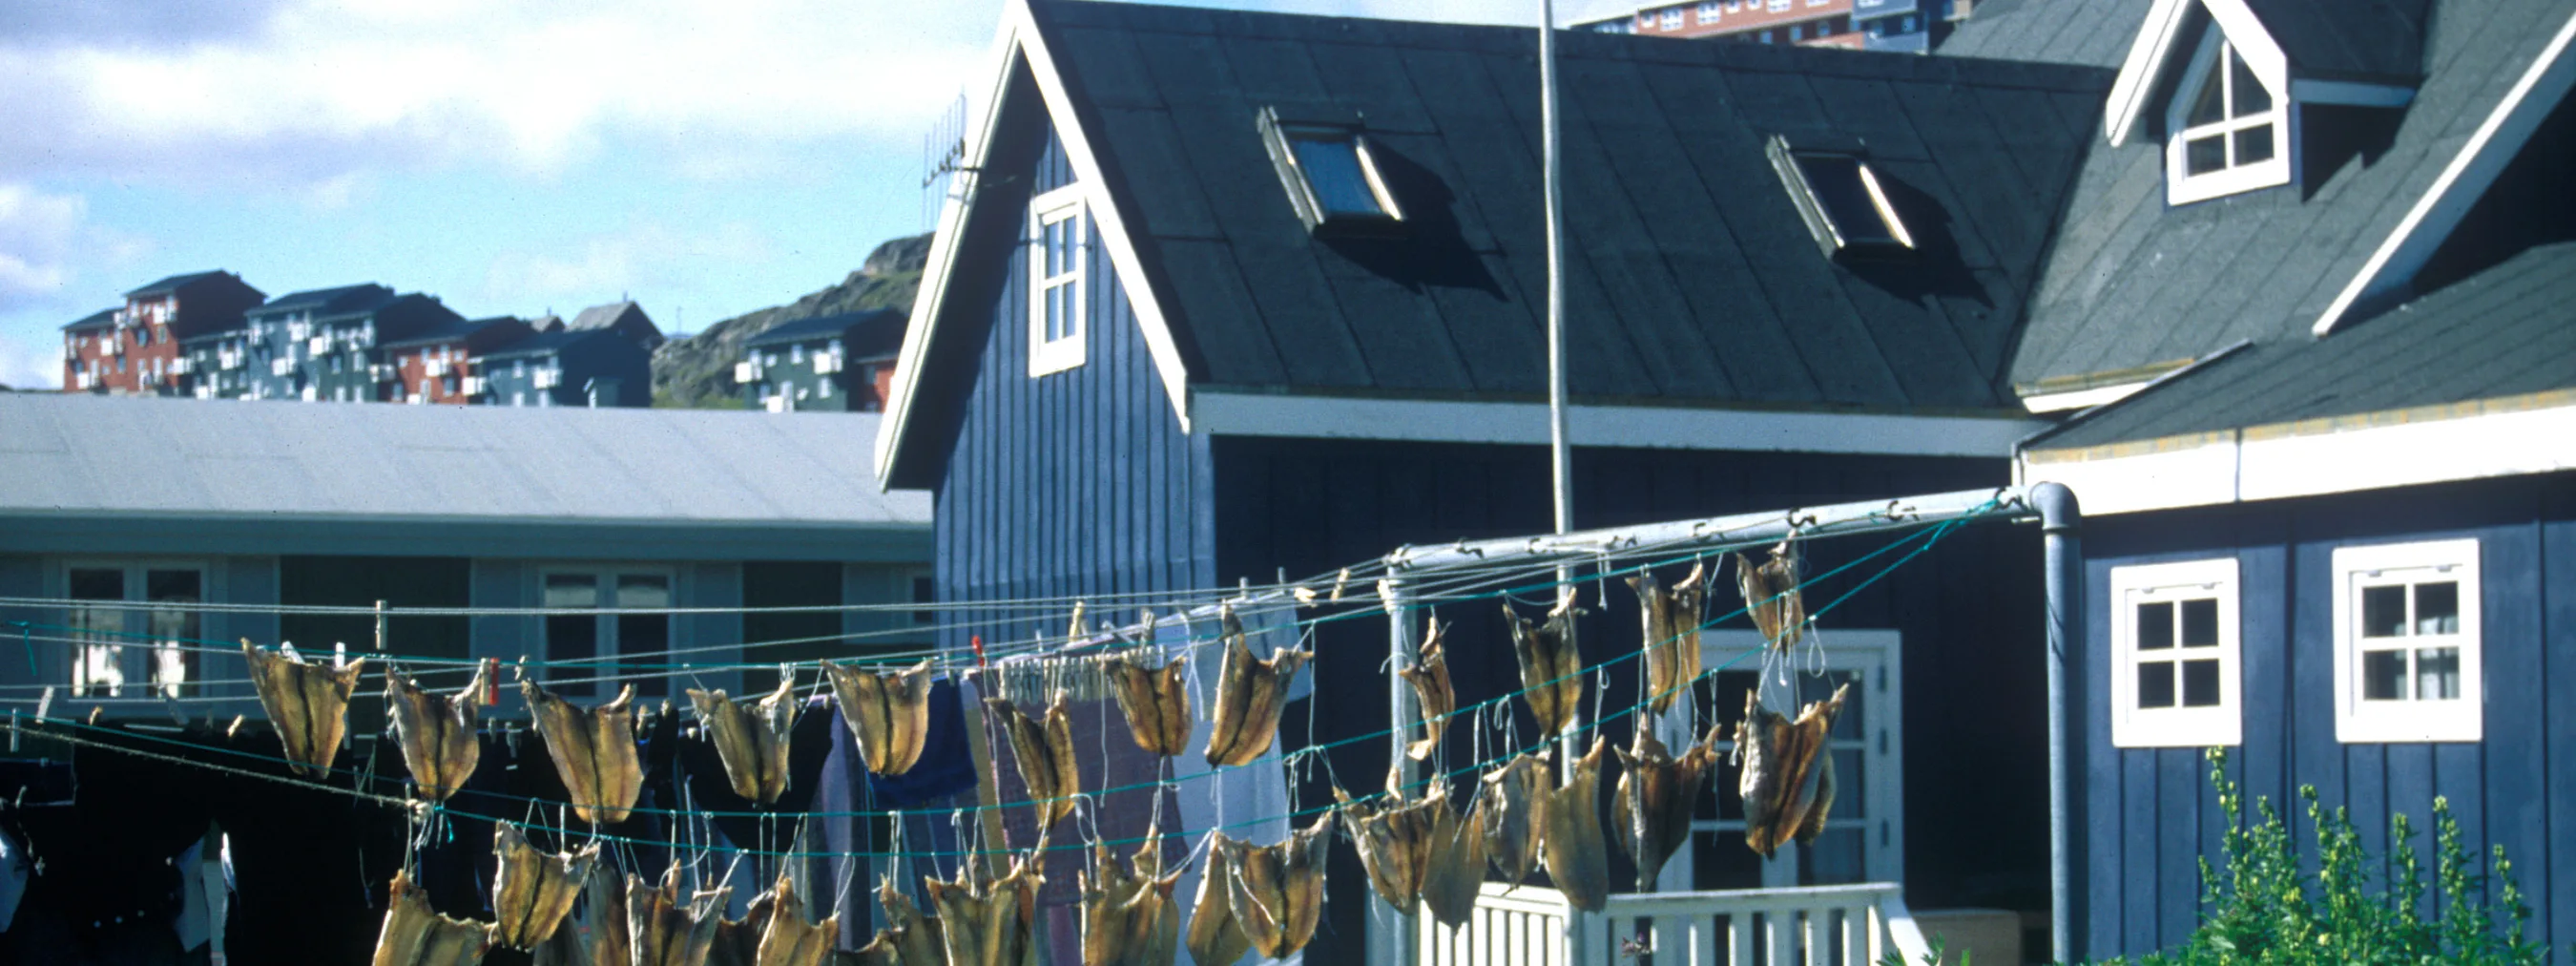 Südgrönland: Siedlung Qaqortoq
Blau-weißes Haus mit Fischen, die an der Wäscheleine aufgehängt sind.